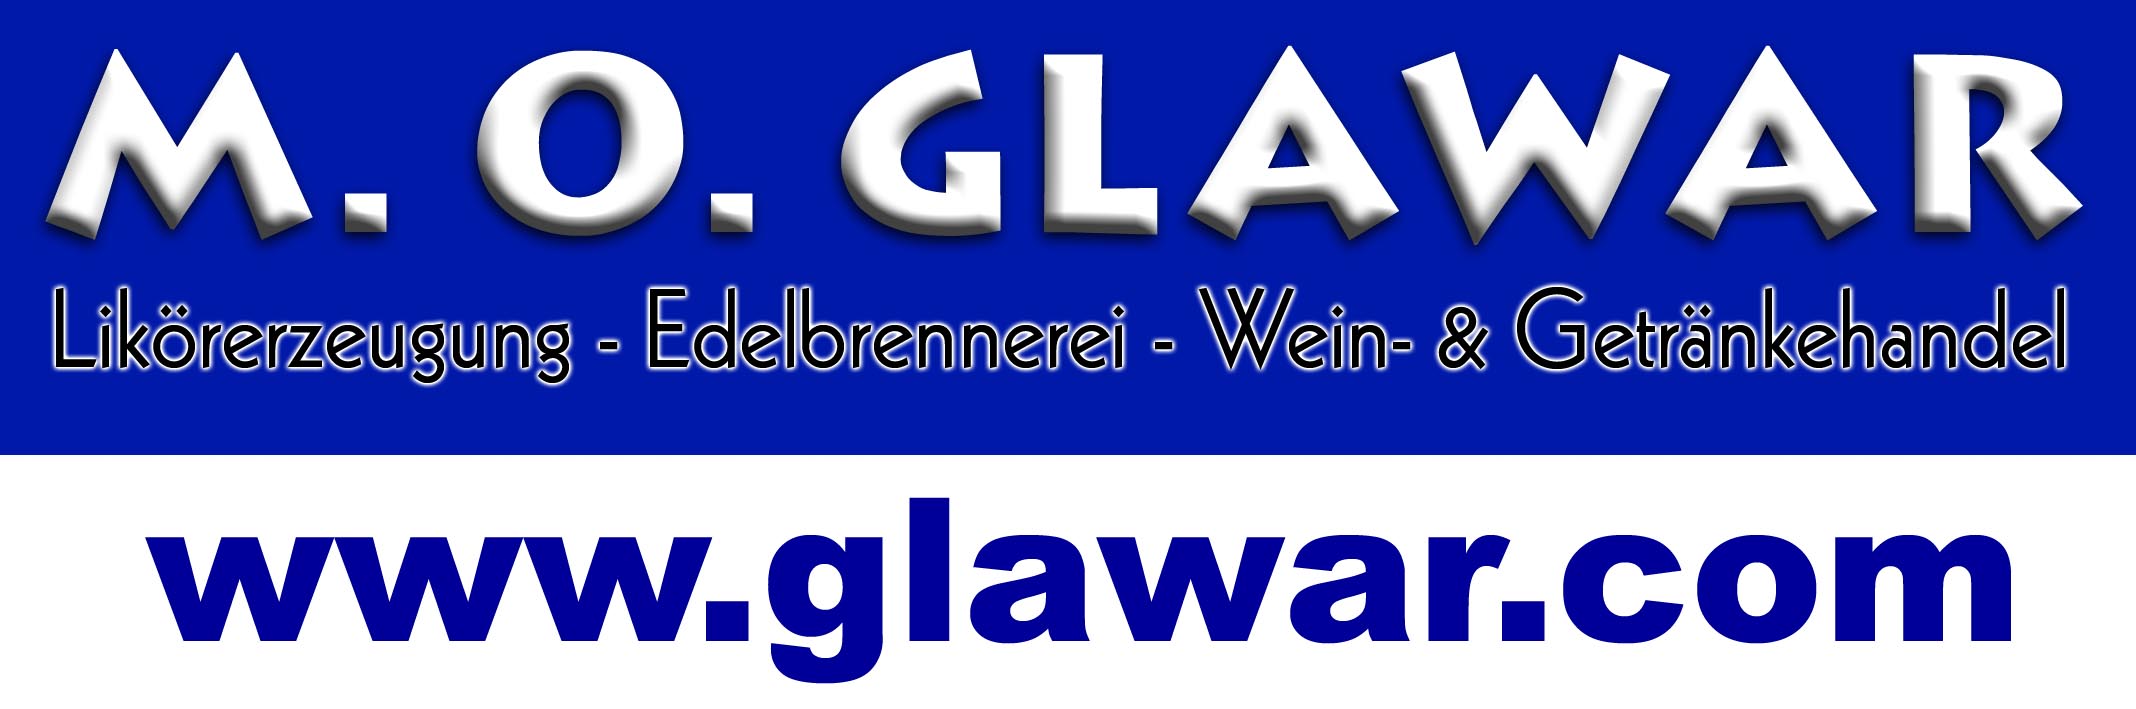 Reinhard Glawar Spirituosenmanufaktur & Getränkehandels GmbH